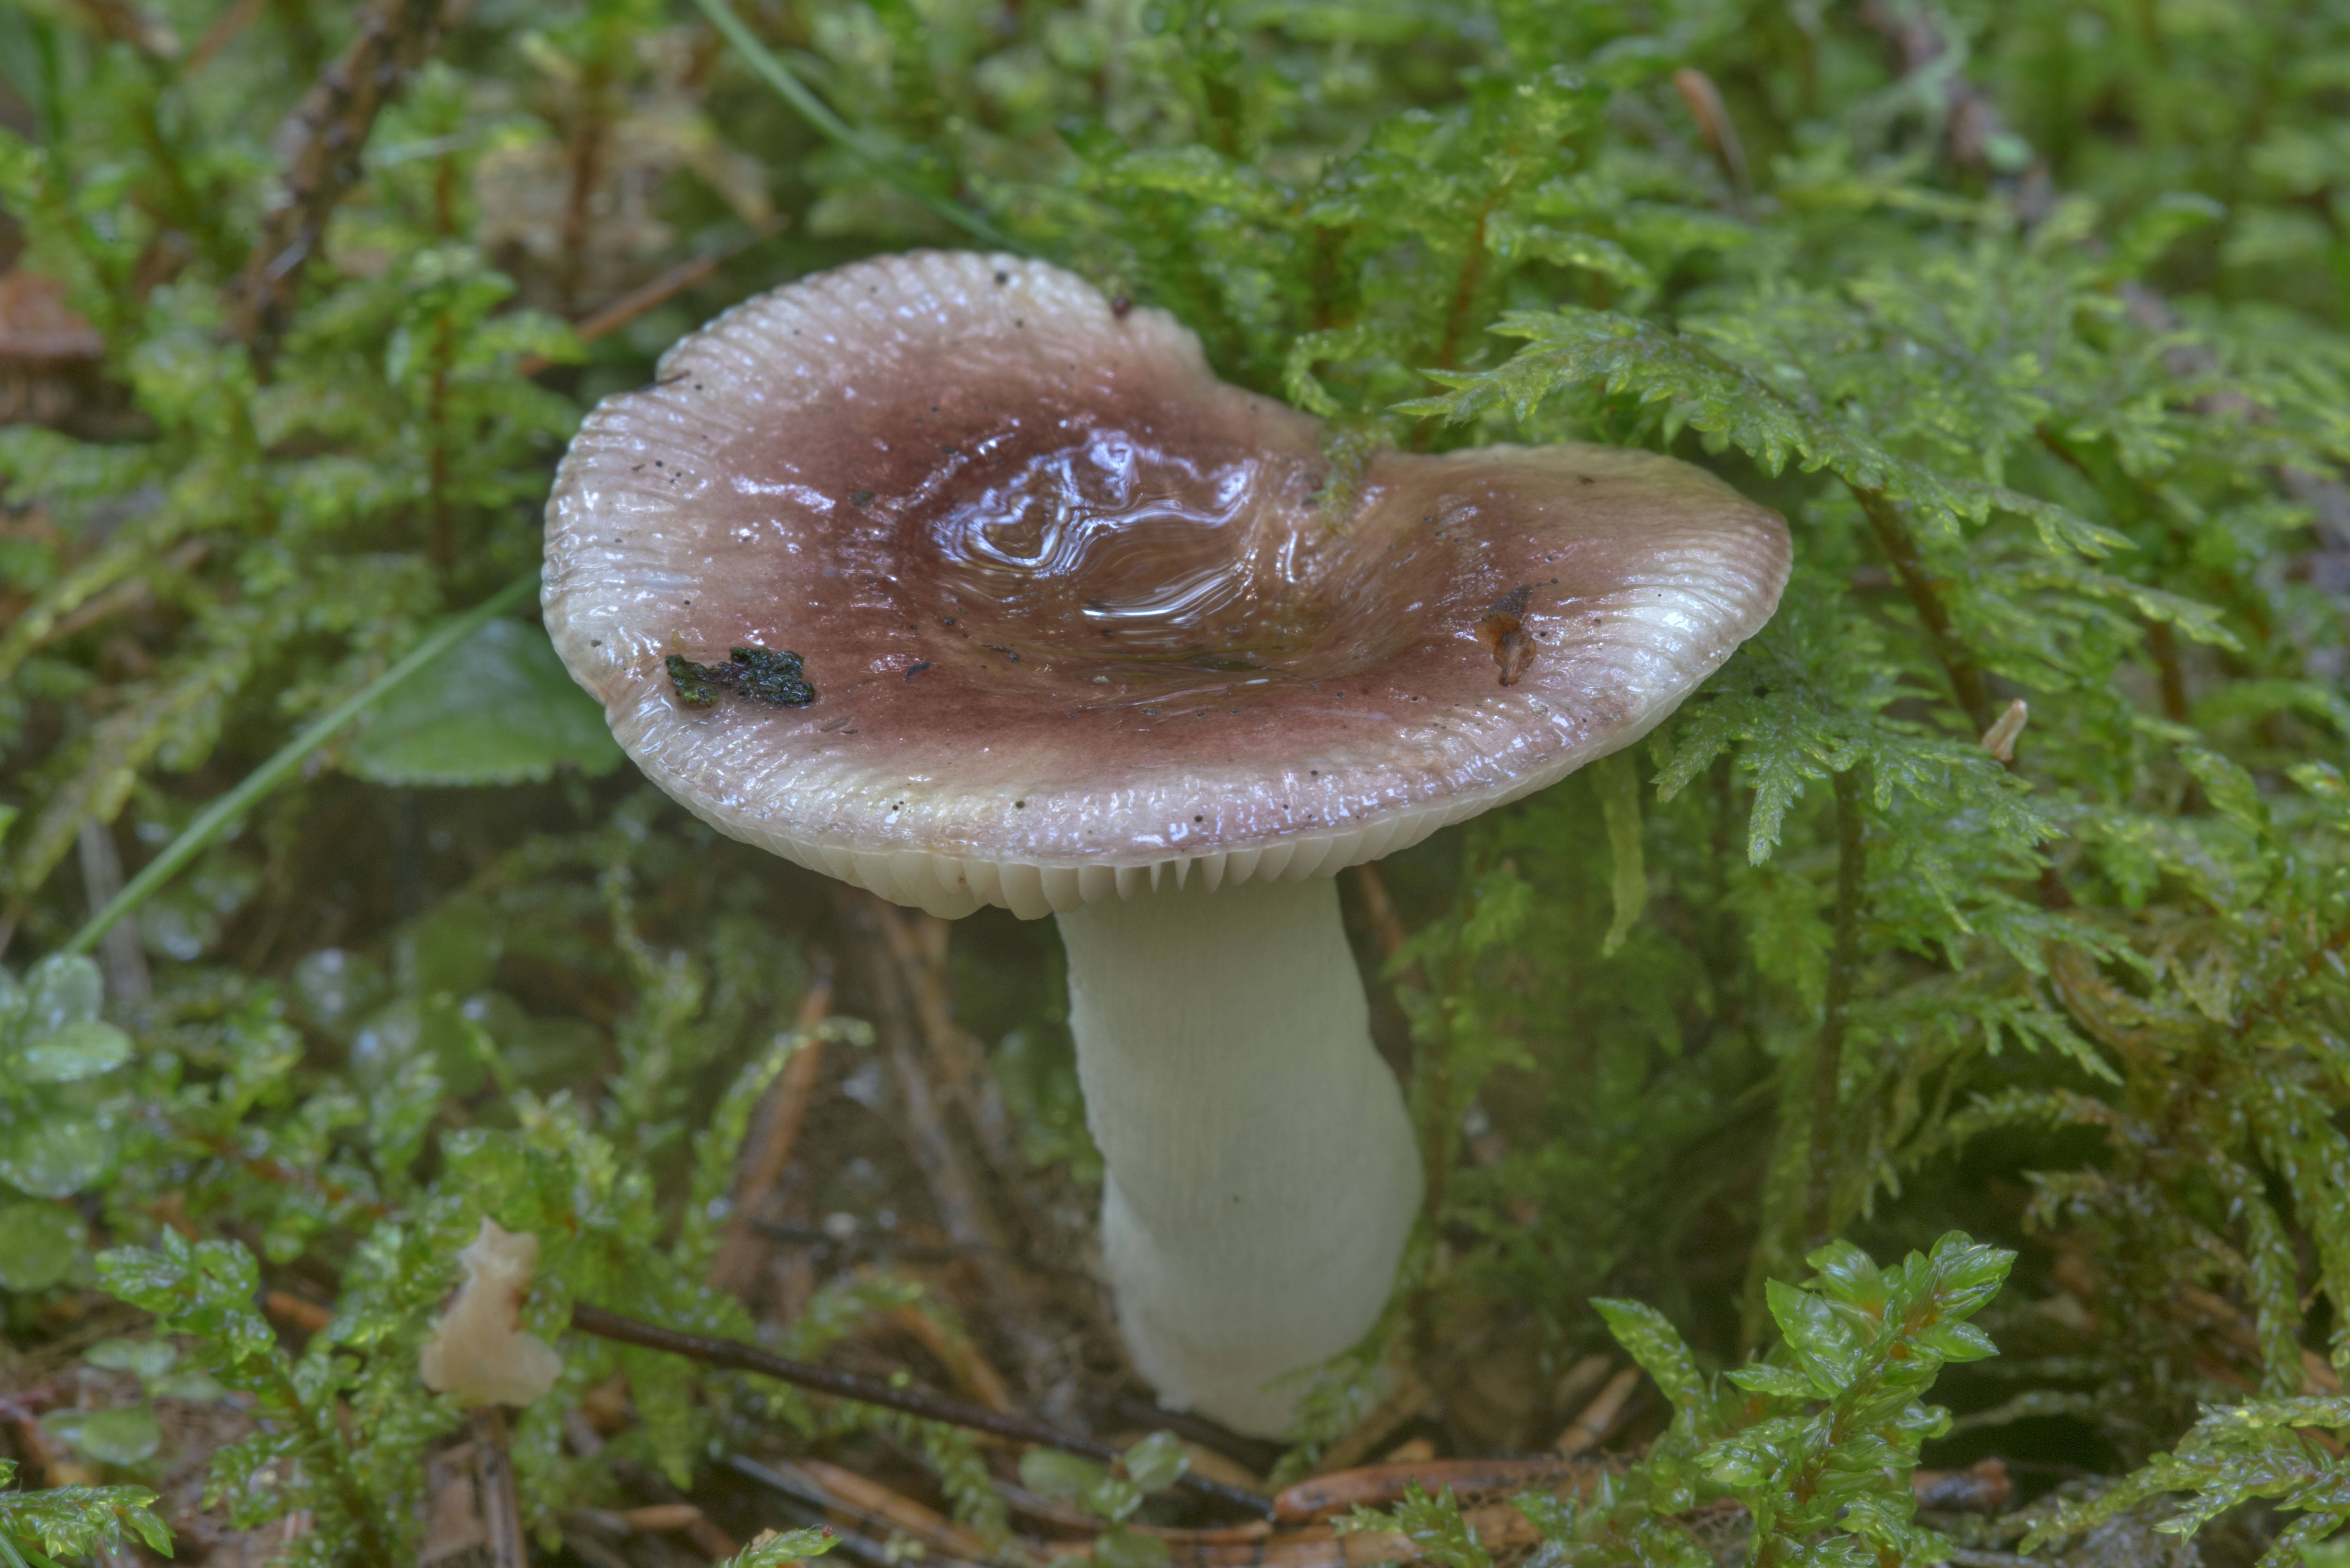 Гриб синяк (gyroporus cyanescens): информация, где растет, фото